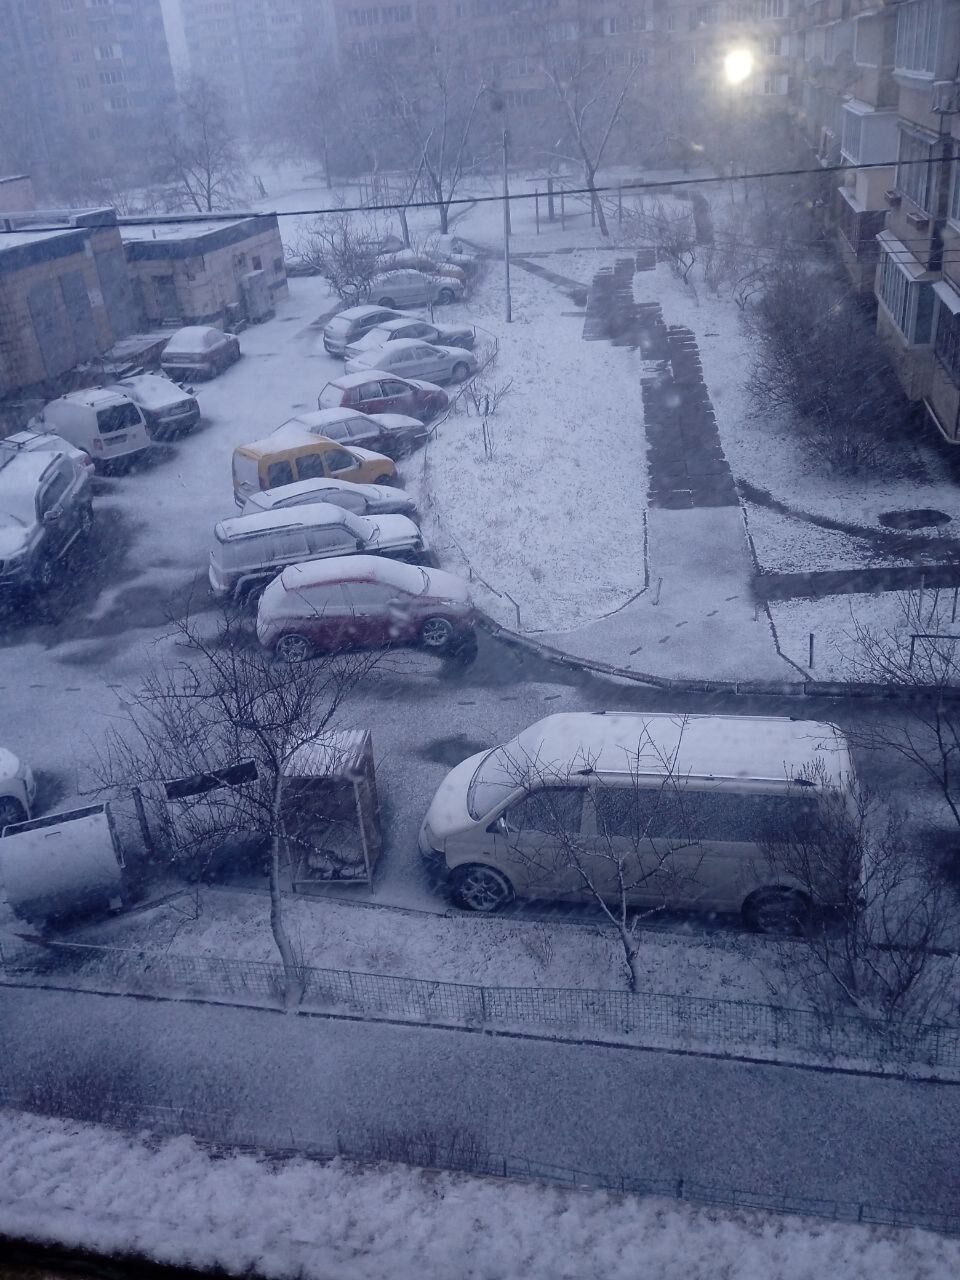 "Пляжный сезон открыт": в сети отреагировали на снегопад в Киеве 12 марта. Фото и видео